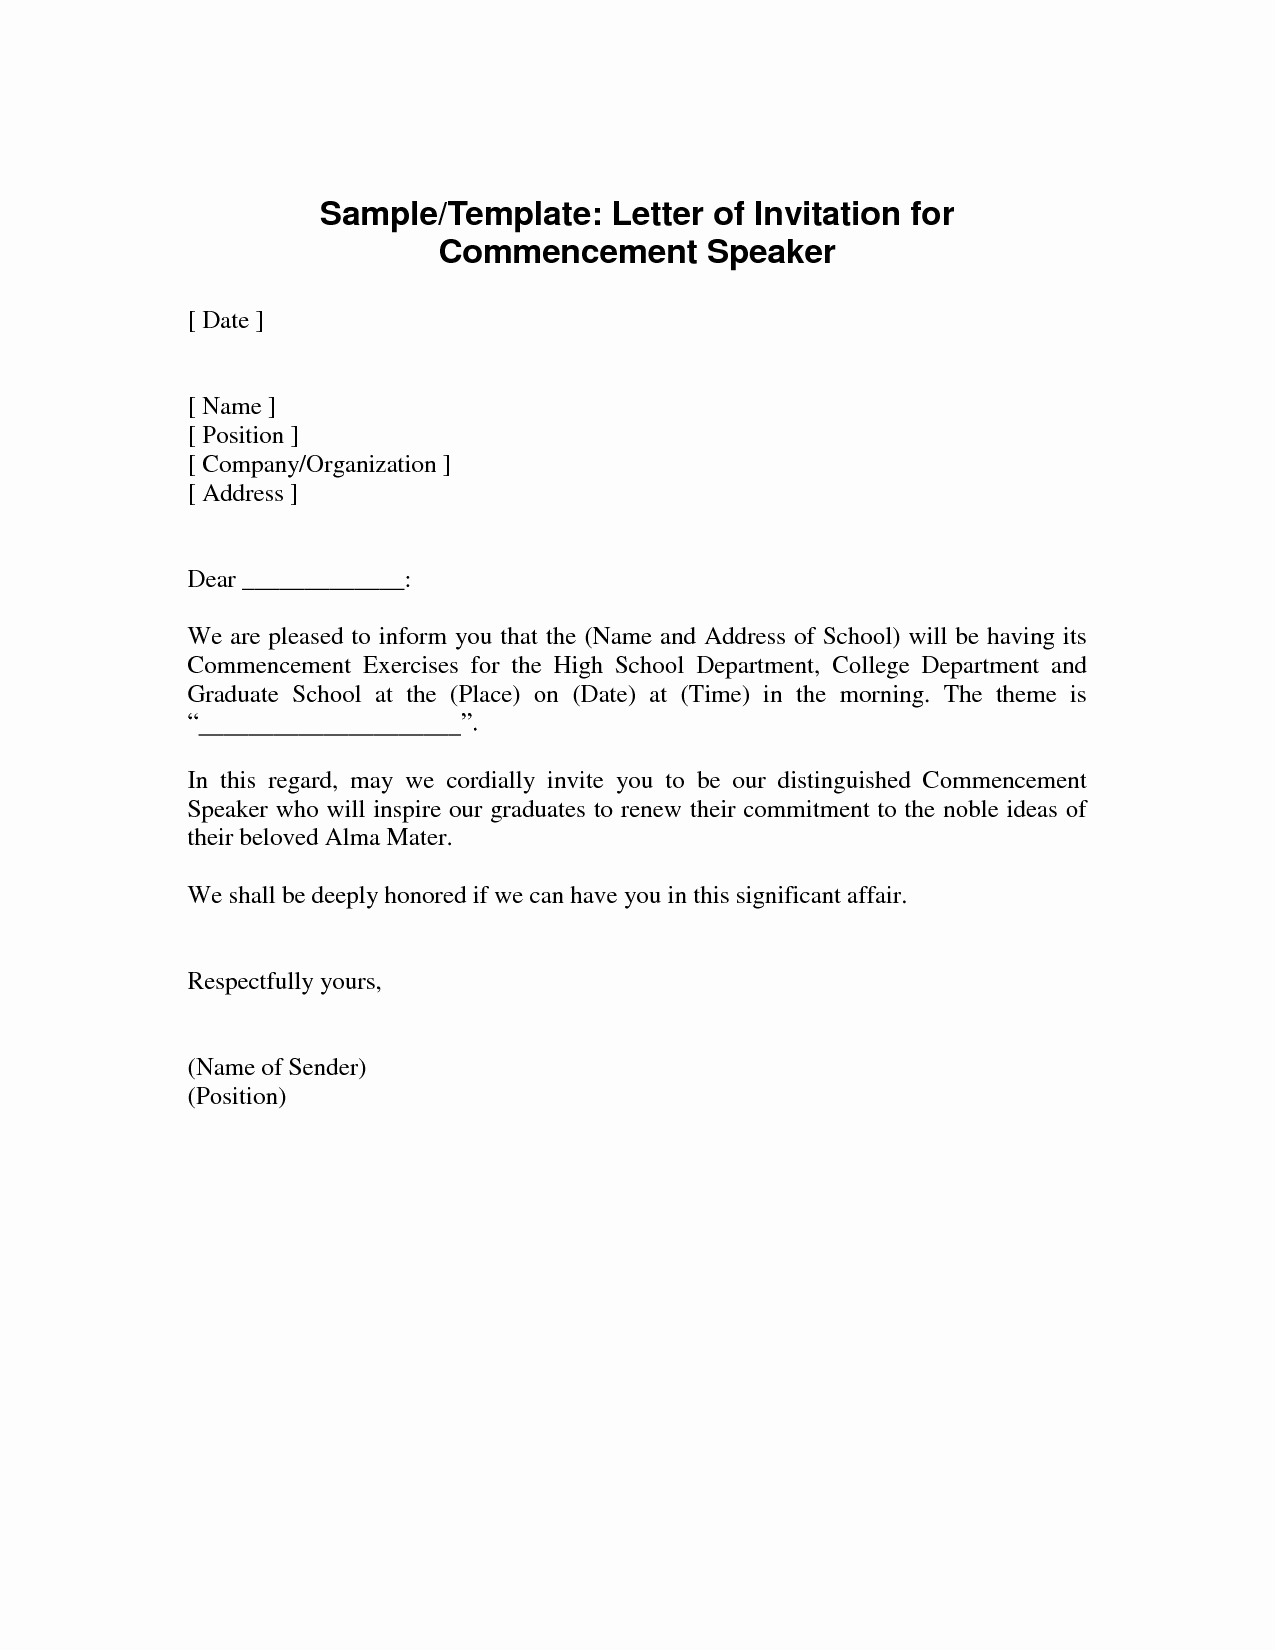 Invitation Letter for Speaker Fresh Invitation Letter Guest Speaker Graduation Ceremony